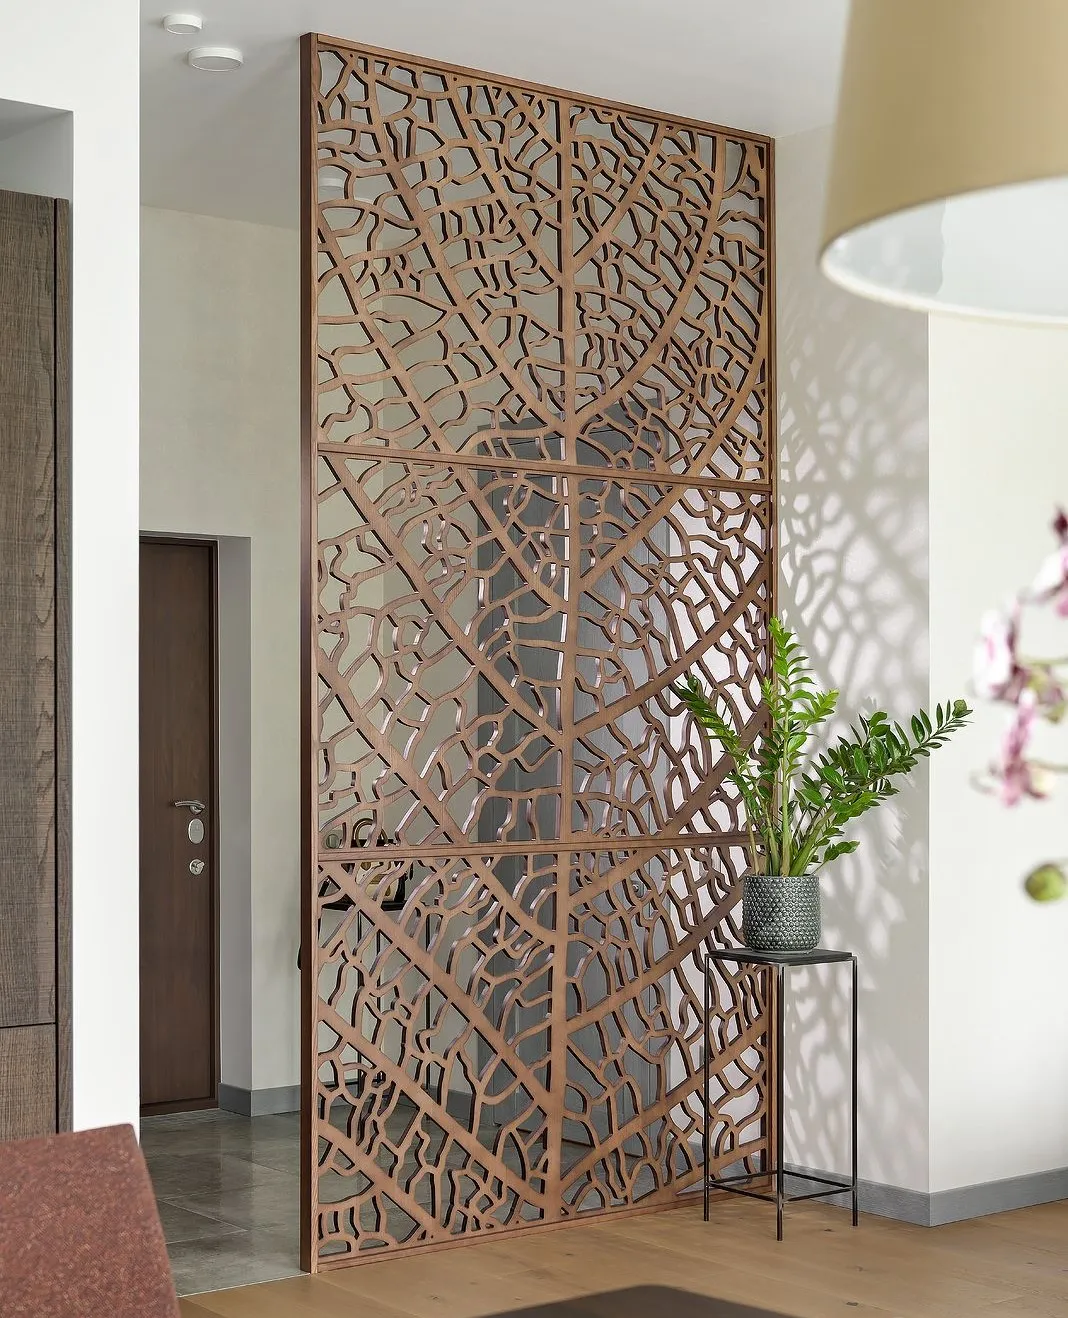 Thiết kế vách ngăn nhỏ bằng gỗ kiểu truyền thống cho phòng khách